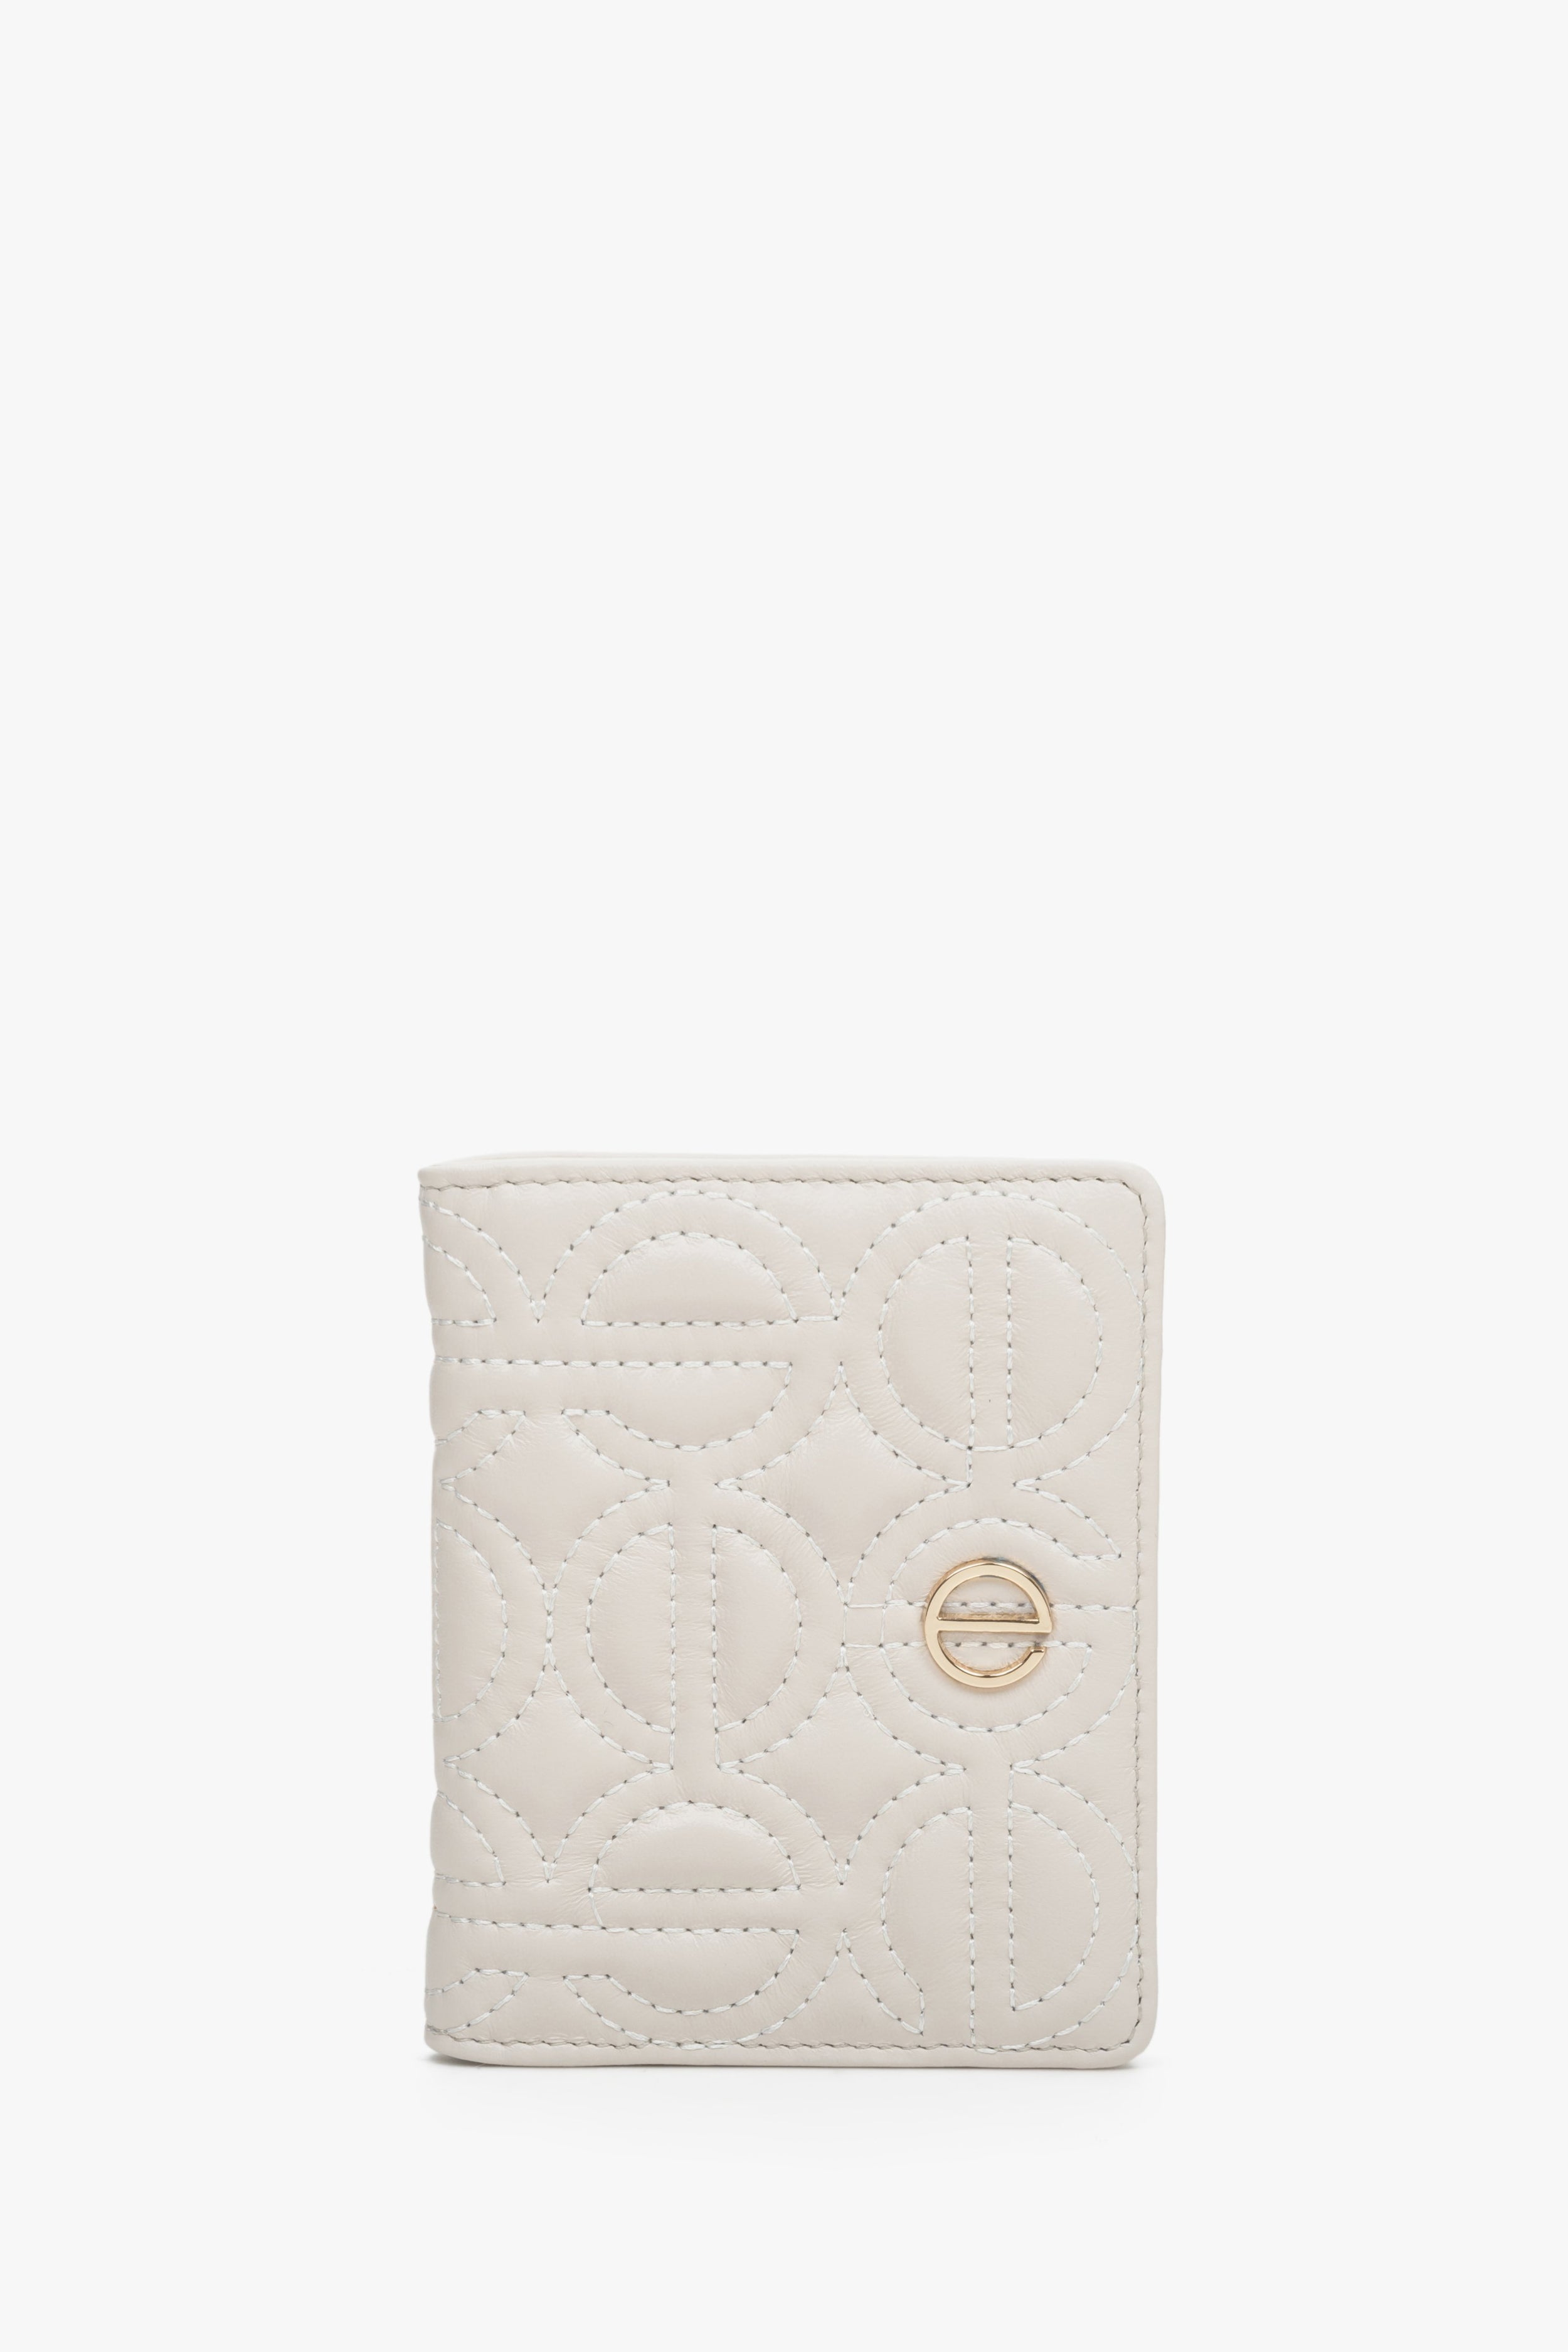 Estro: Mały skórzany portfel damski w kolorze jasnobeżowym ze złotymi okuciami